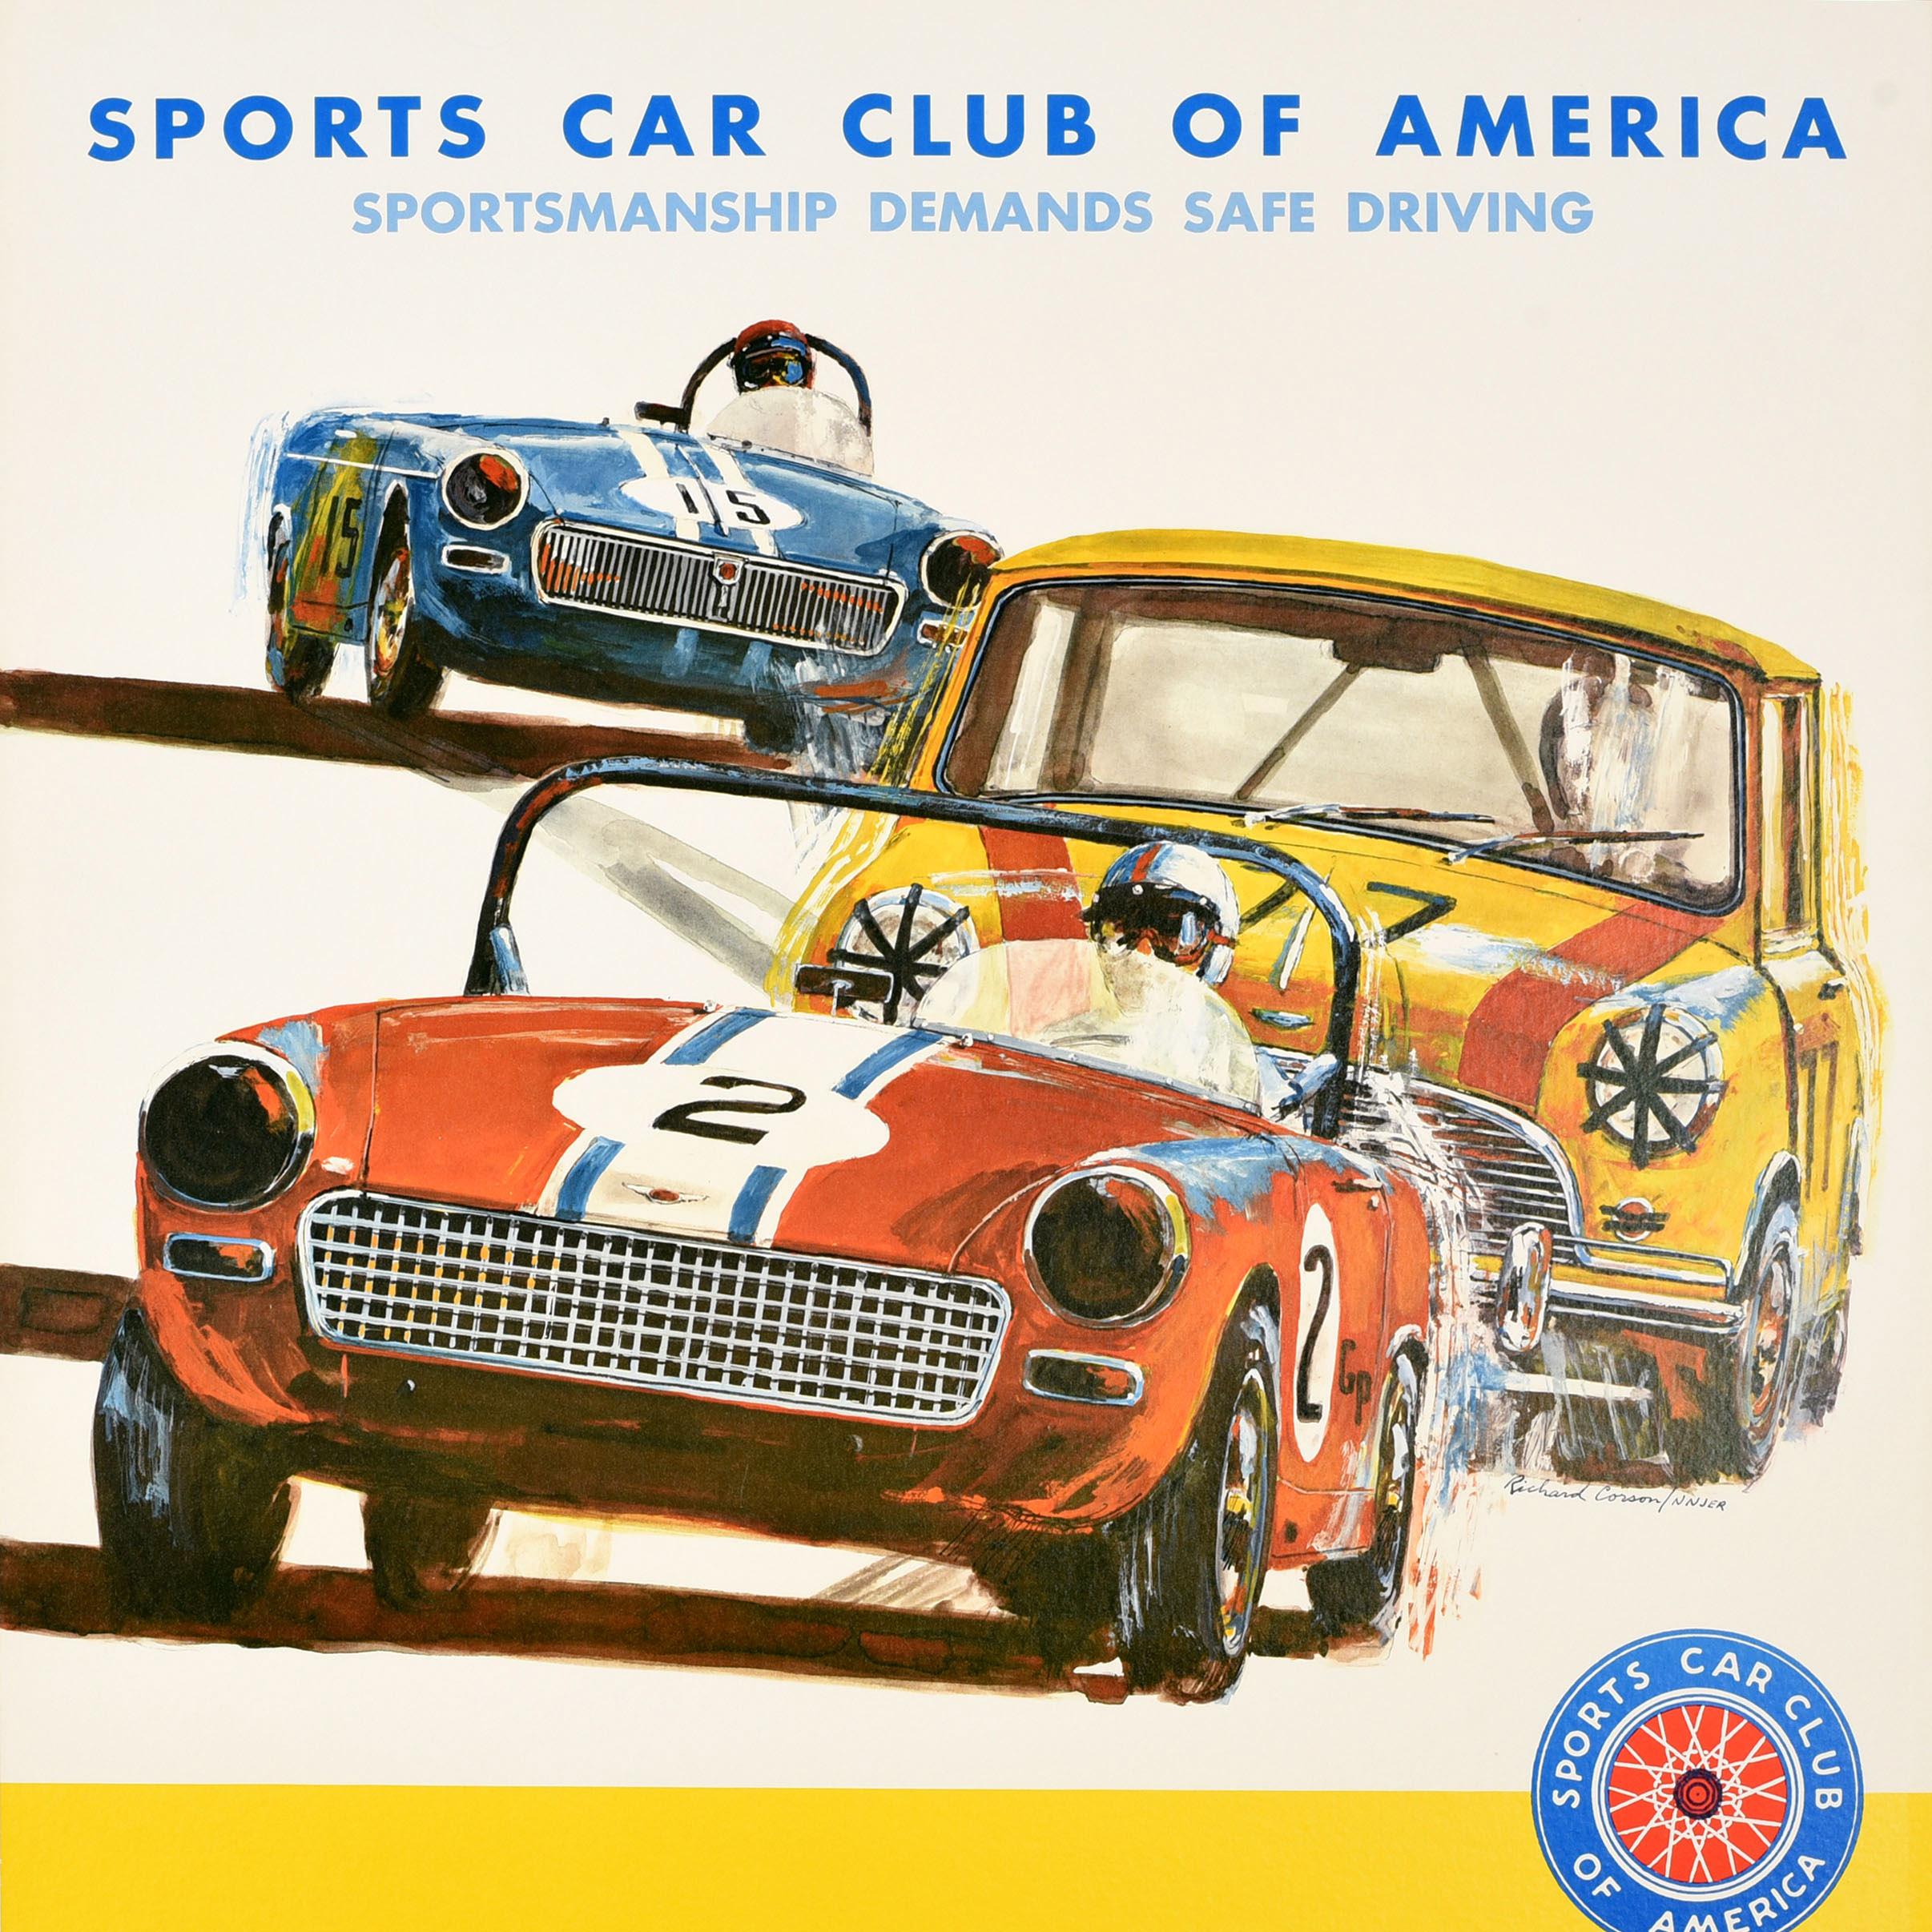 Original Vintage Motorsport Plakat für den Sports Car Club of America Sportsmanship Demands Safe Driving mit Kunstwerk von drei Autos Rennen in Richtung des Betrachters mit dem Titel Text über und Logo über den gelben Raum unten. Der 1944 gegründete